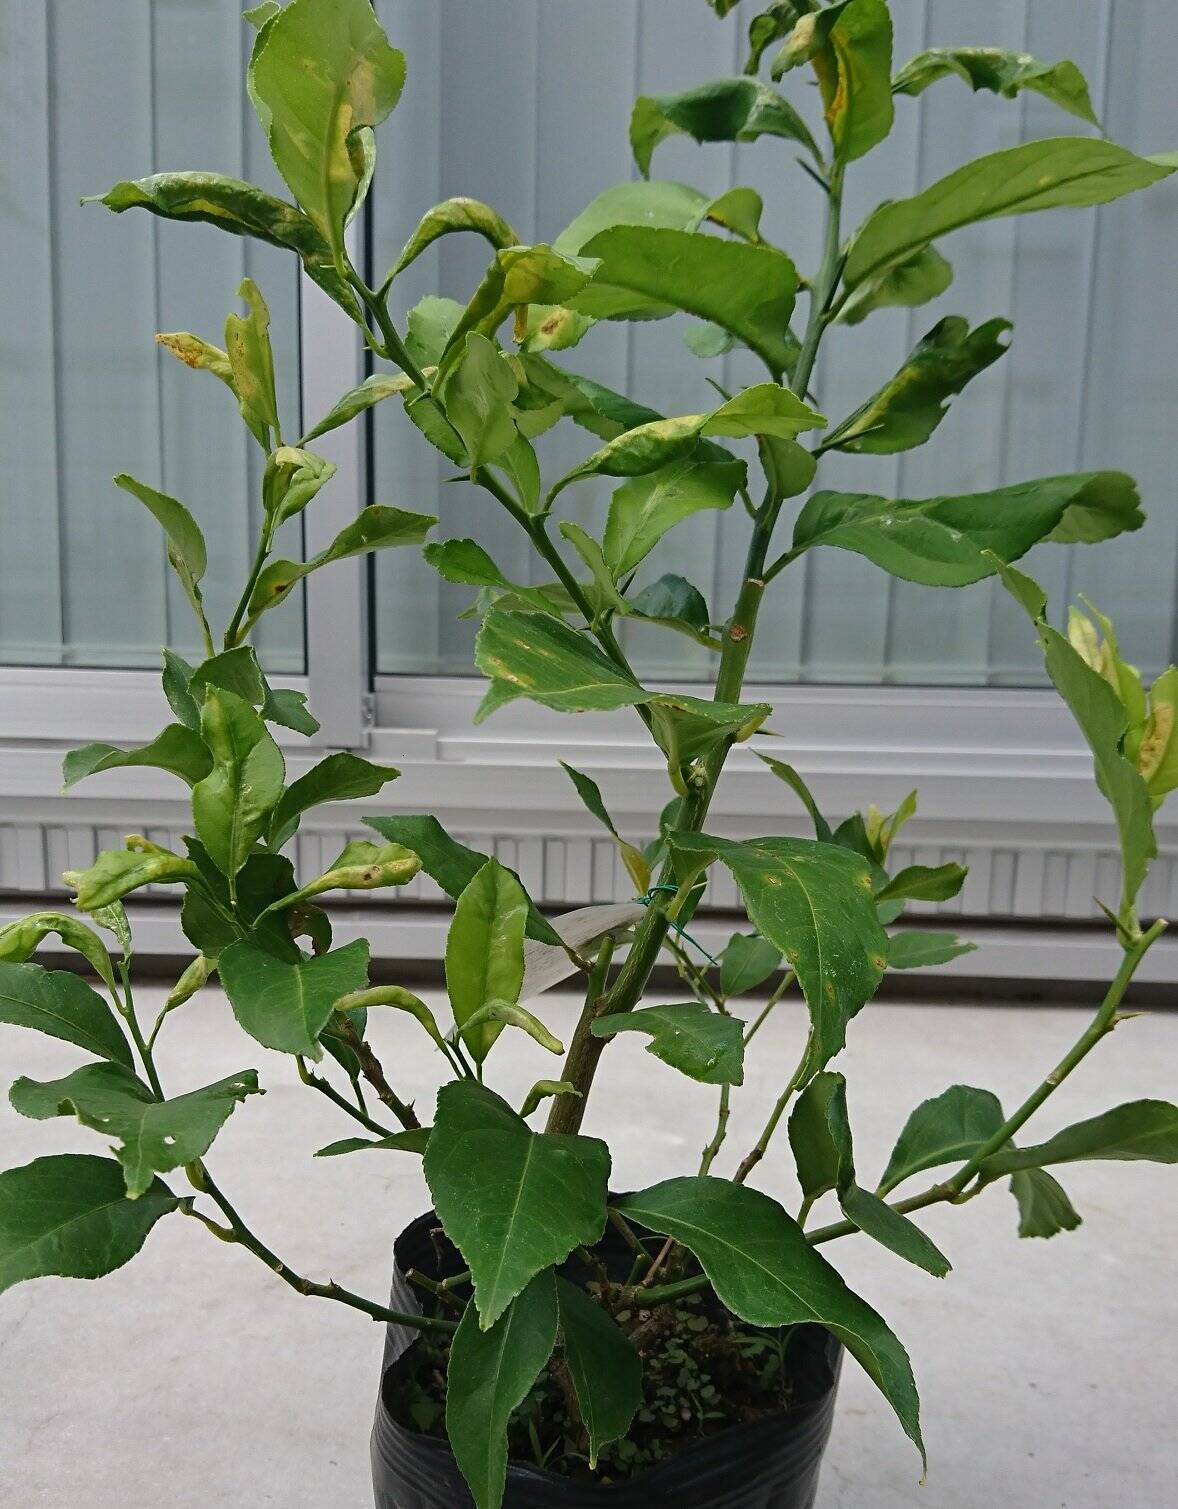 鉢植えで育てる レモンの木 苗木の植え方 管理方法まで 21年10月11日 エキサイトニュース